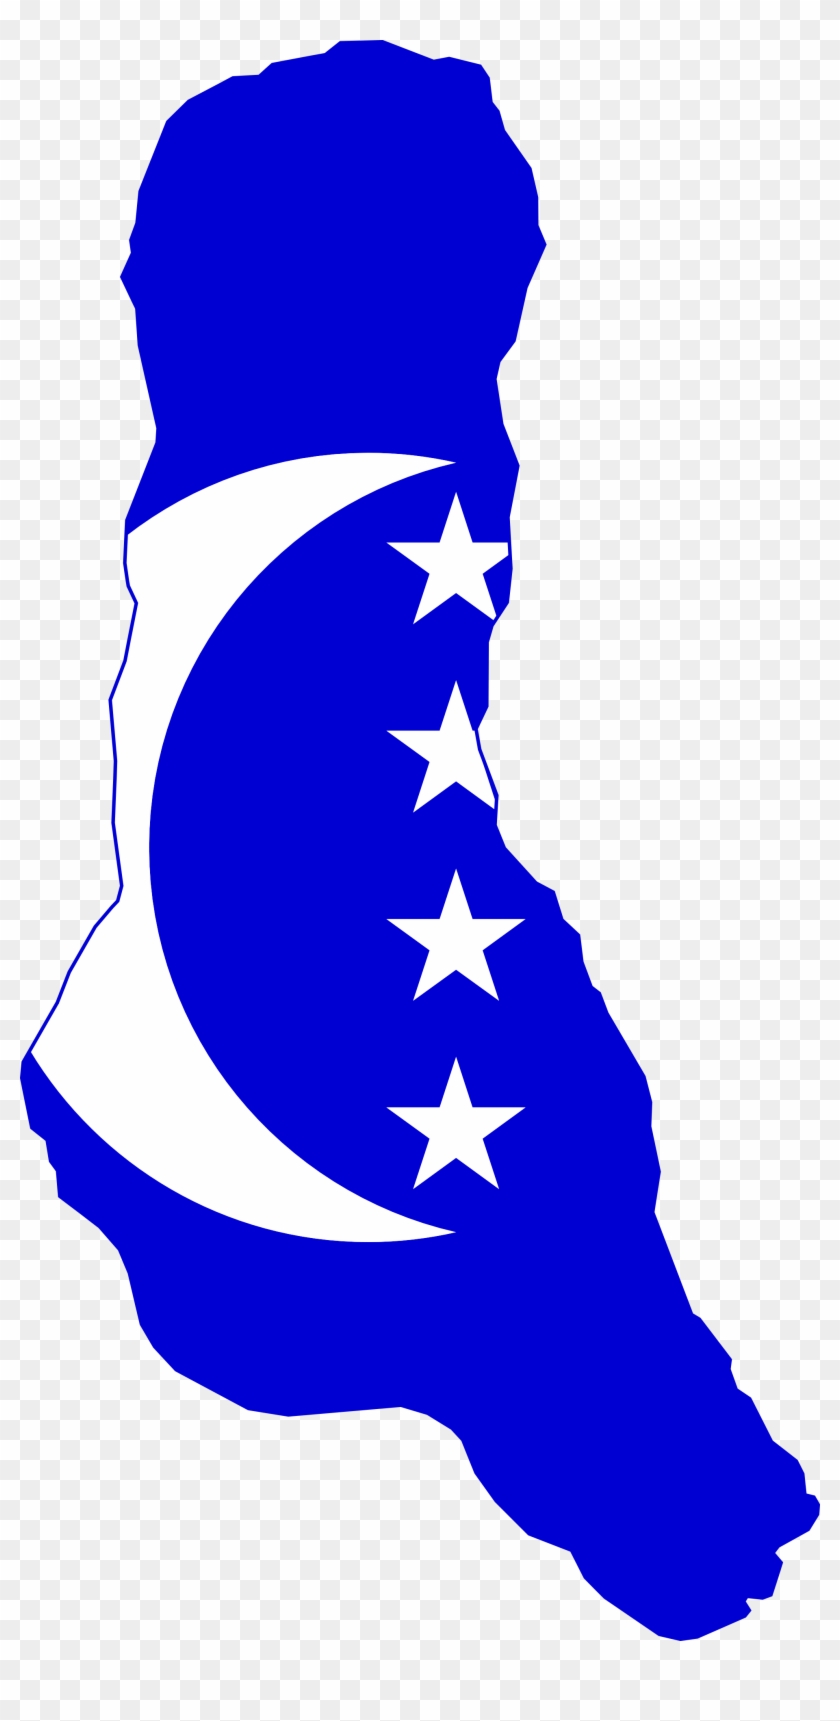 Rancor - Clipart - Ngazidja Grand Comore Flag And Map Throw Blanket #434612